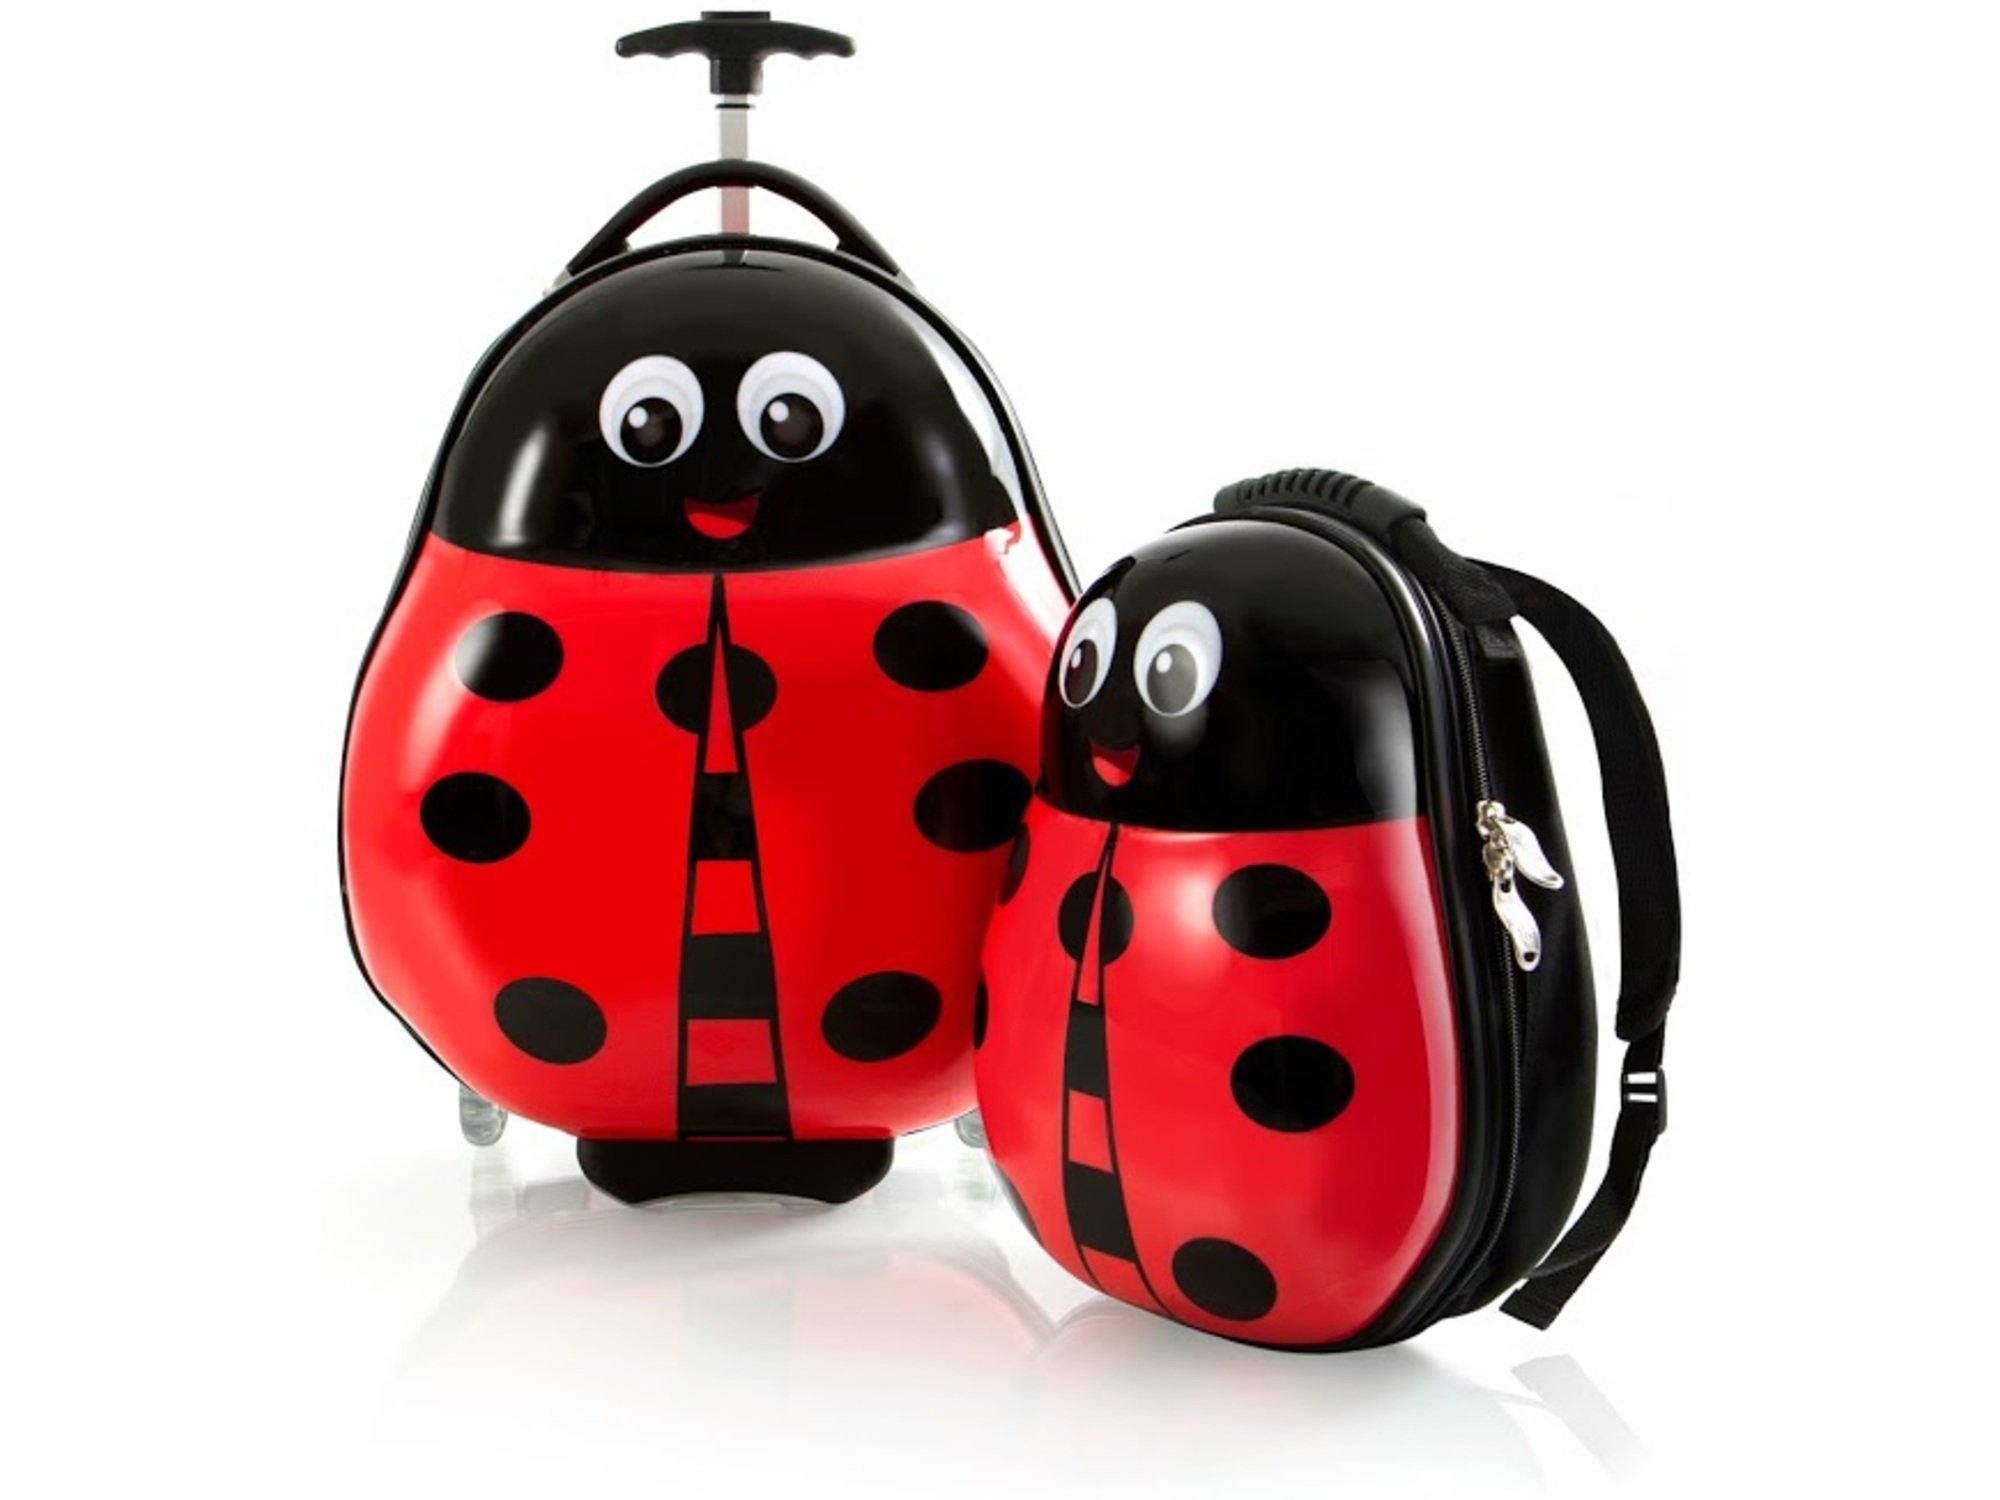 Heys Dečji koferi Travel tots Lady bug - Kids luggage and backpack set